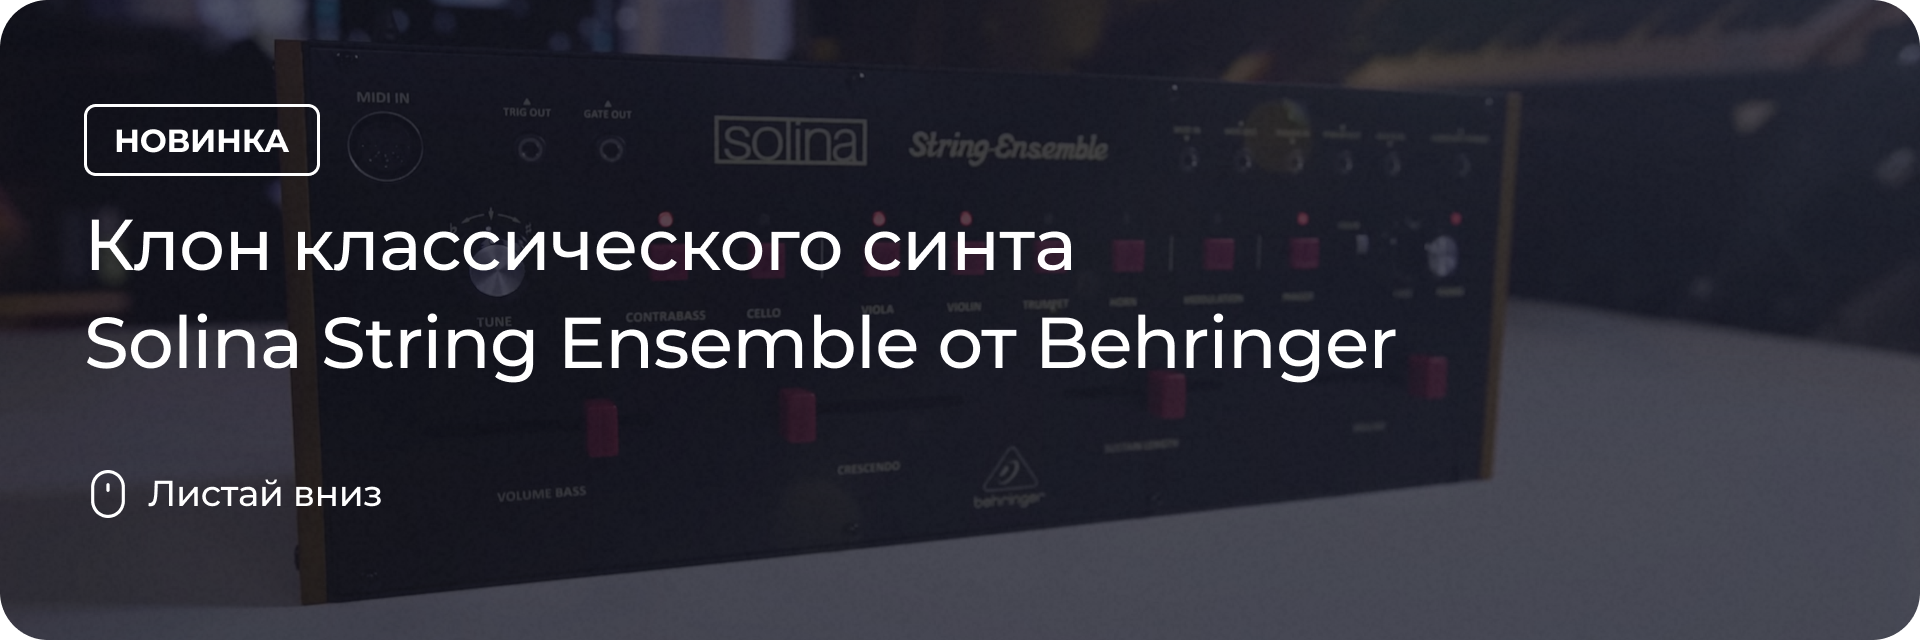 Клон классического синта Solina String Ensemble от Behringer